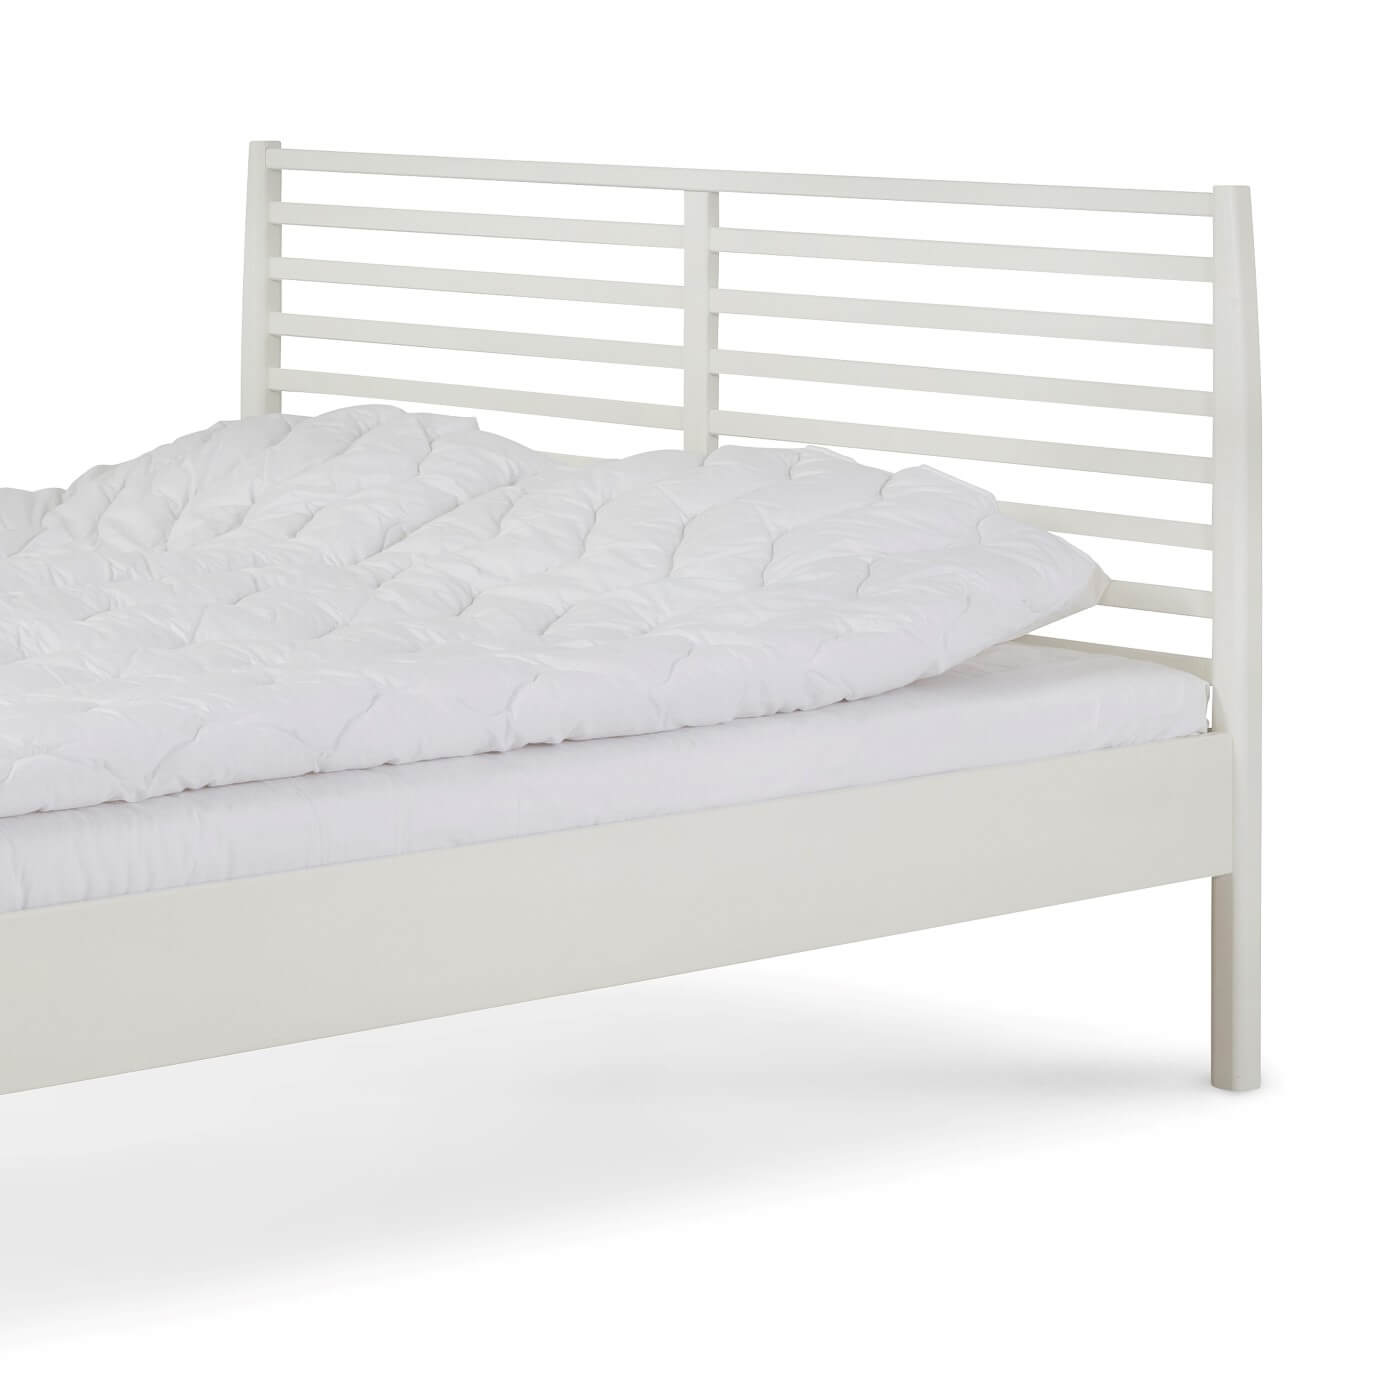 Łóżko drewniane białe 160x200 NOTTE. Fragment białego łóżka z drewna brzozy z wysokim ażurowym zagłówkiem i leżącą białą kołdrą. Nowoczesny skandynawski design